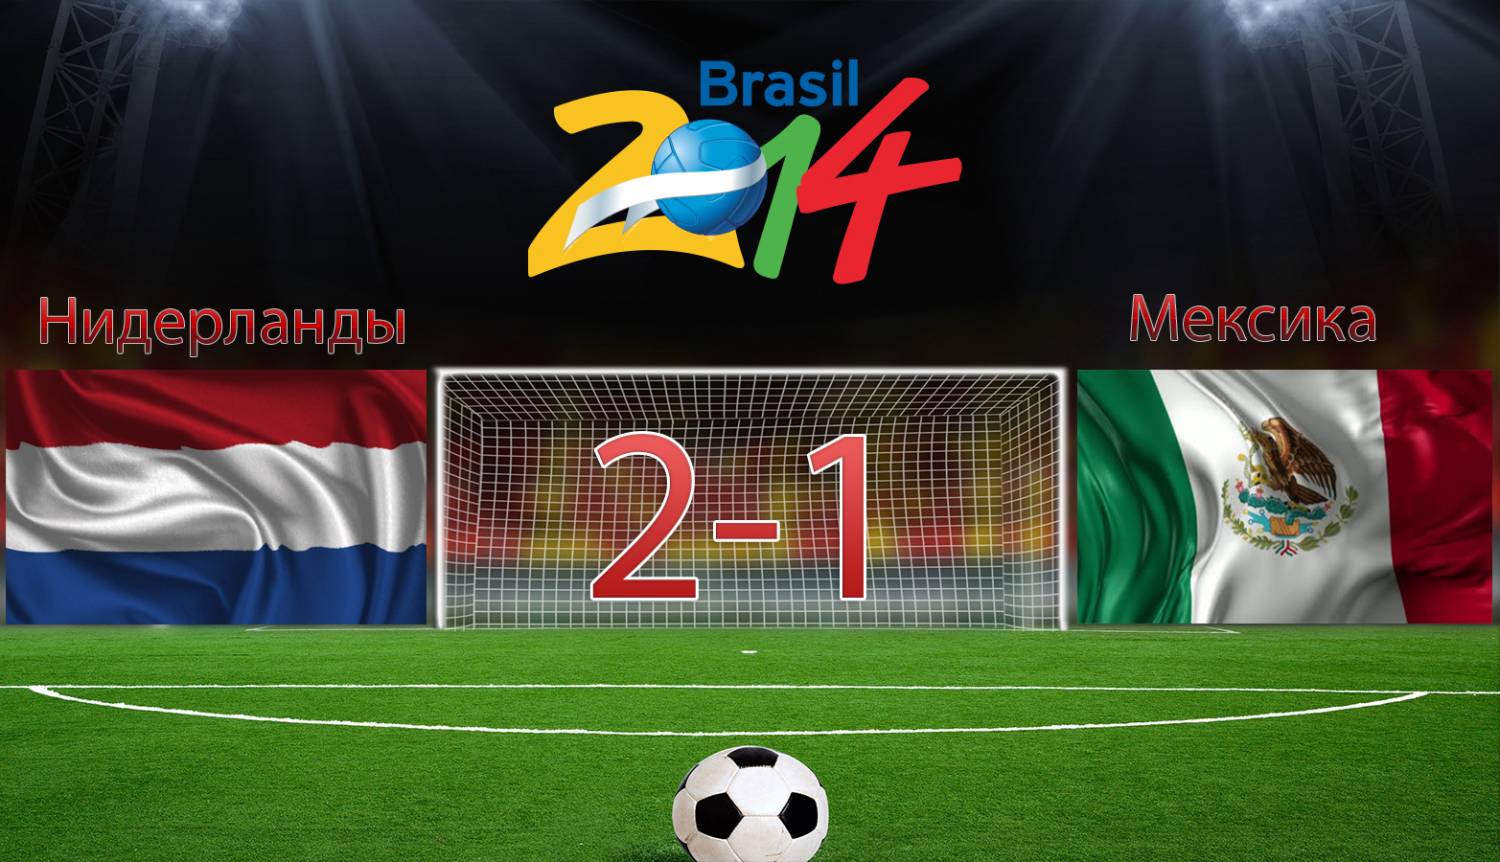 Нидерланды 2-1 Мексика [2014]